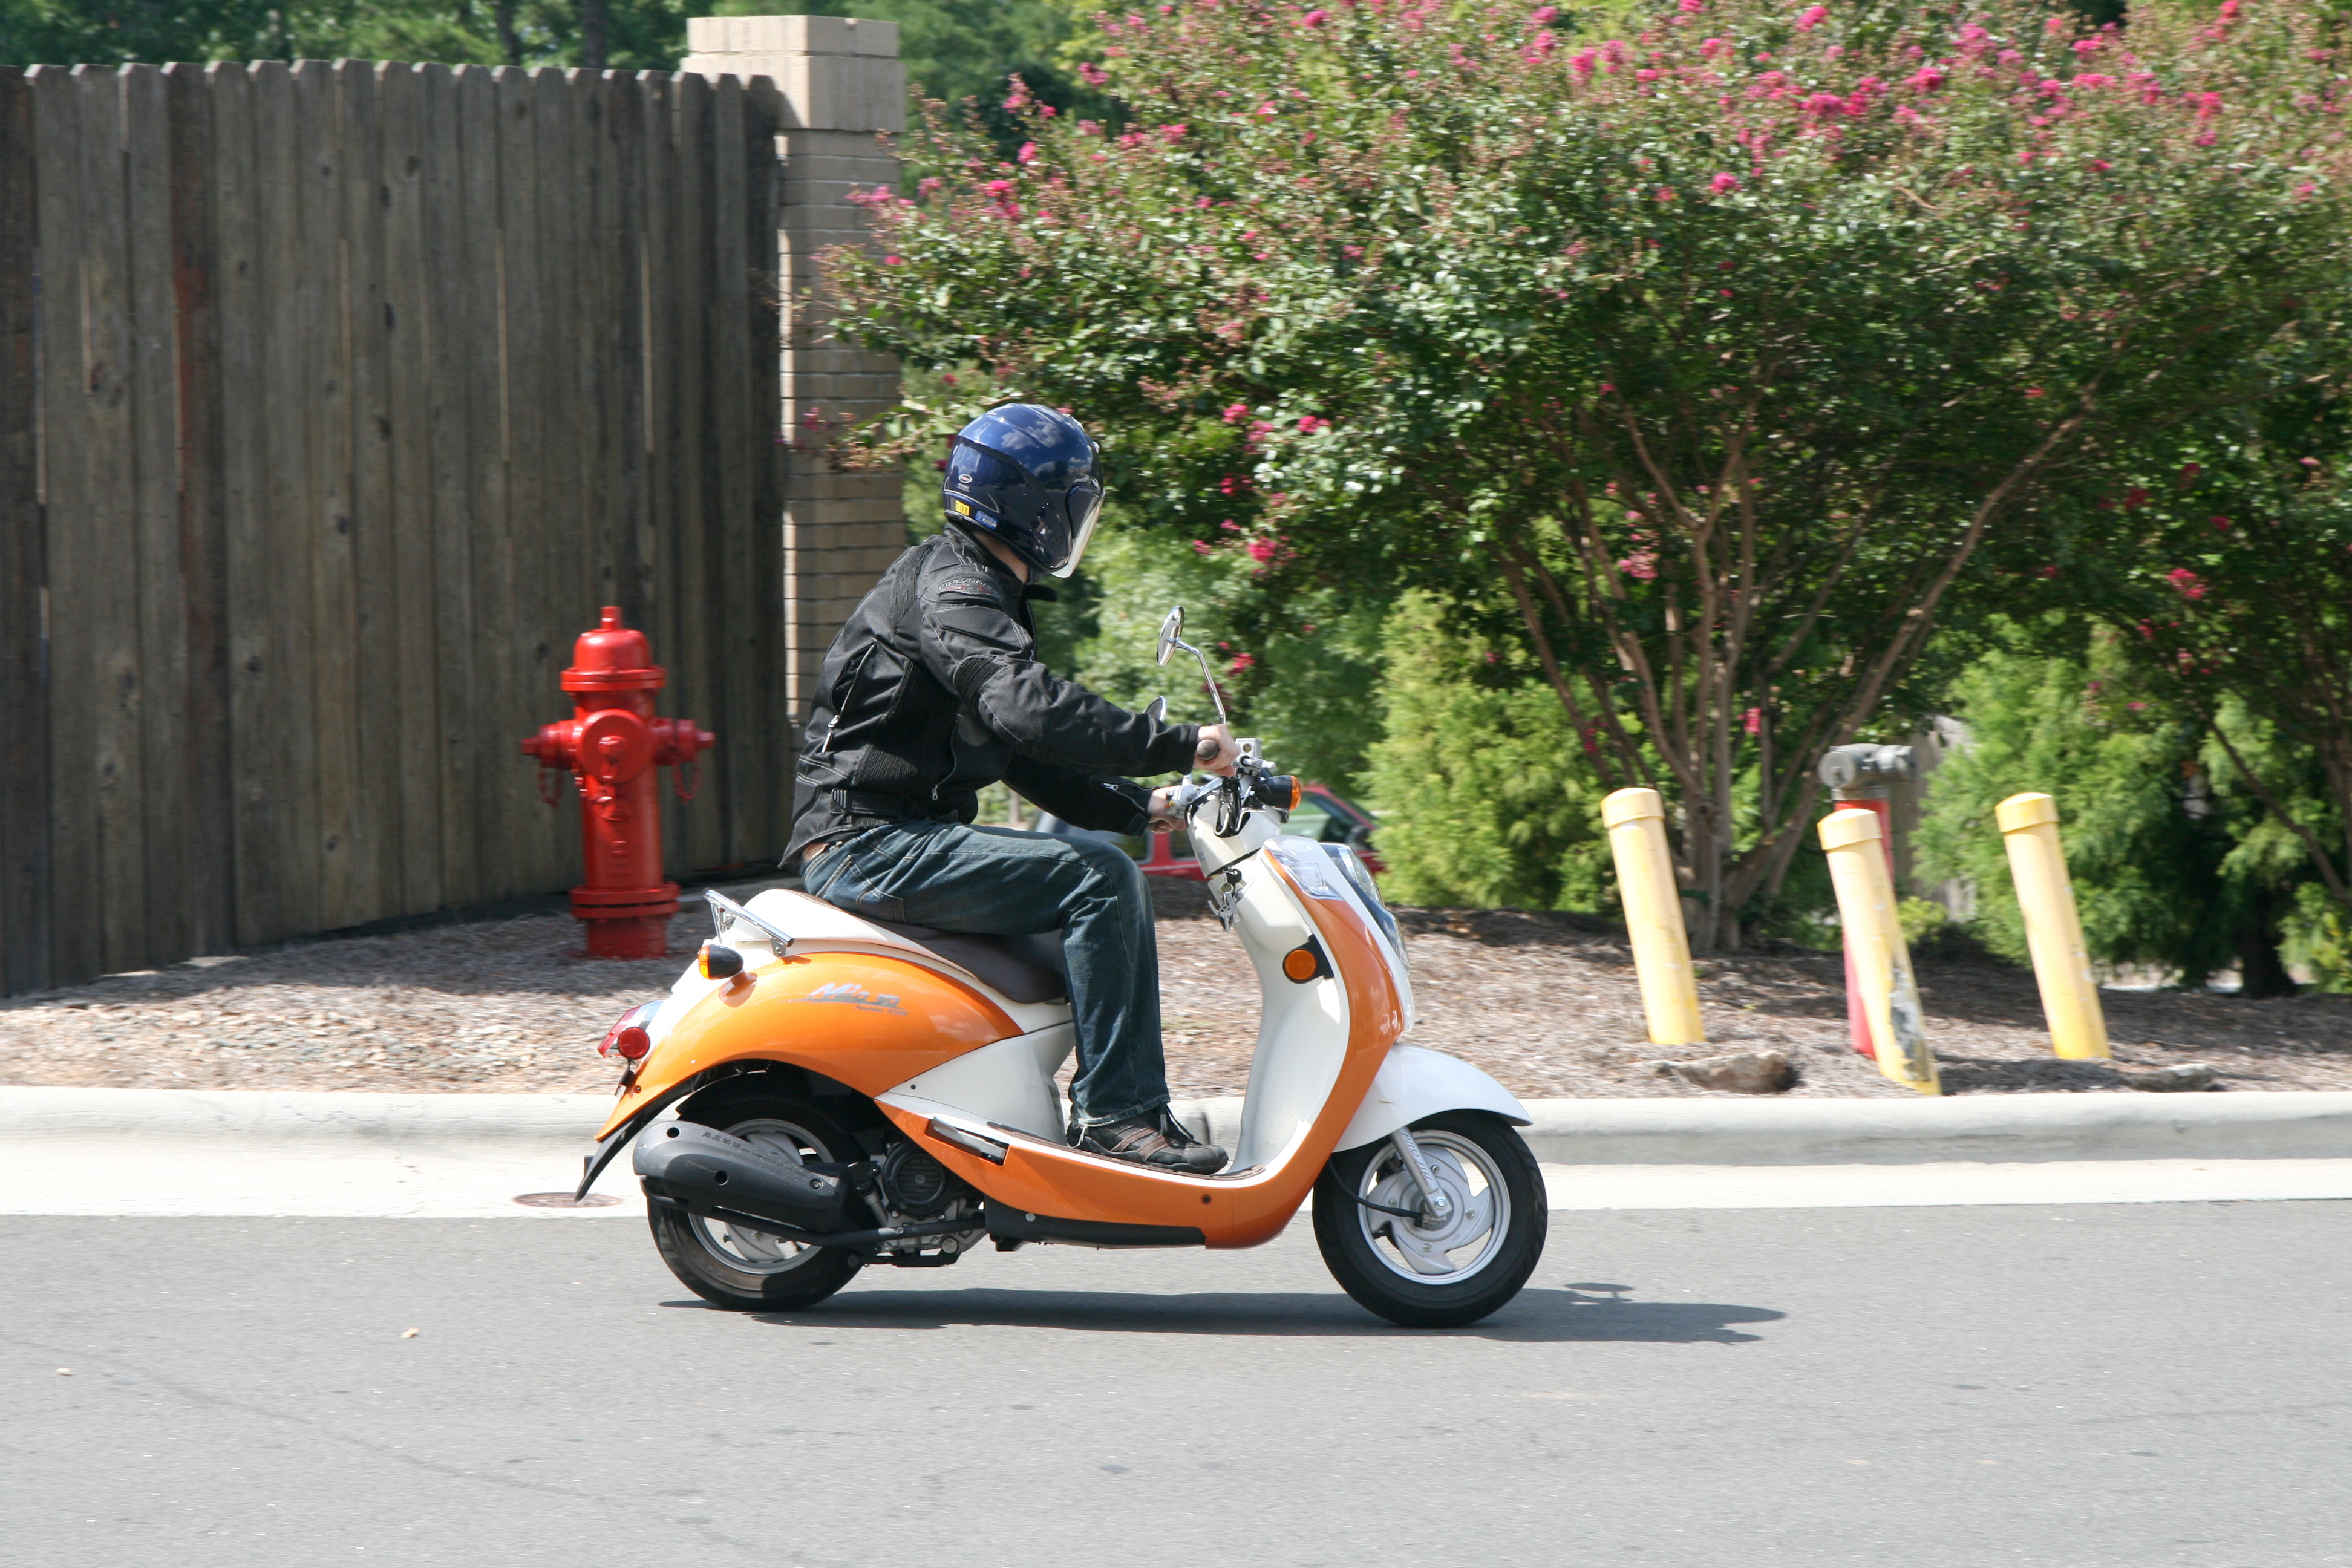 2011-09-10 Rider on SYM Mio scooter